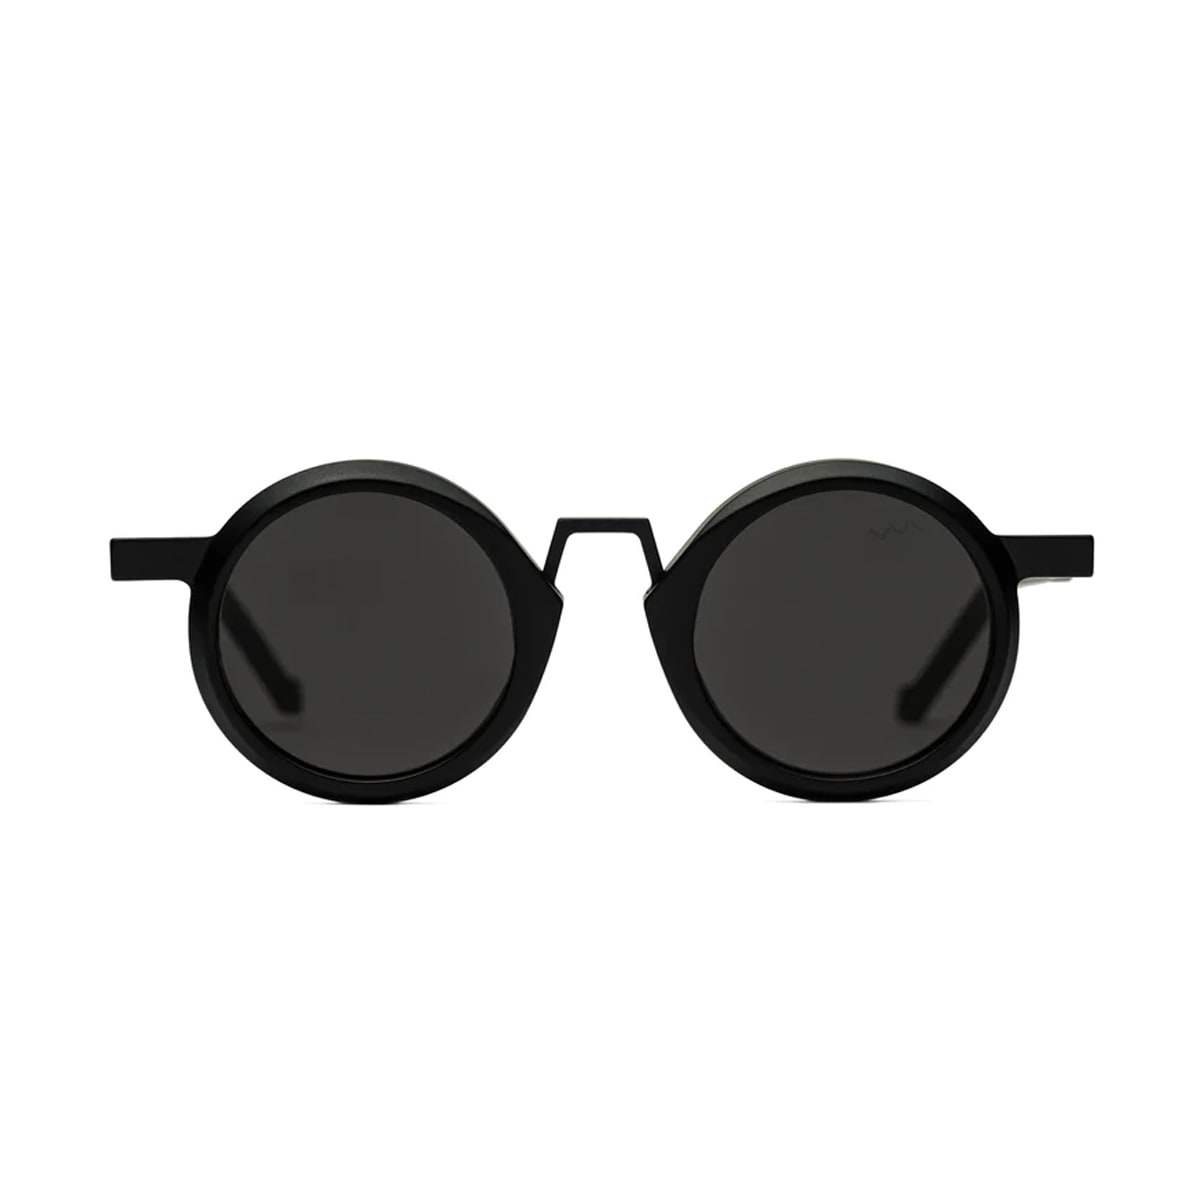 Vava Wl0044 Black Sunglasses In Nero